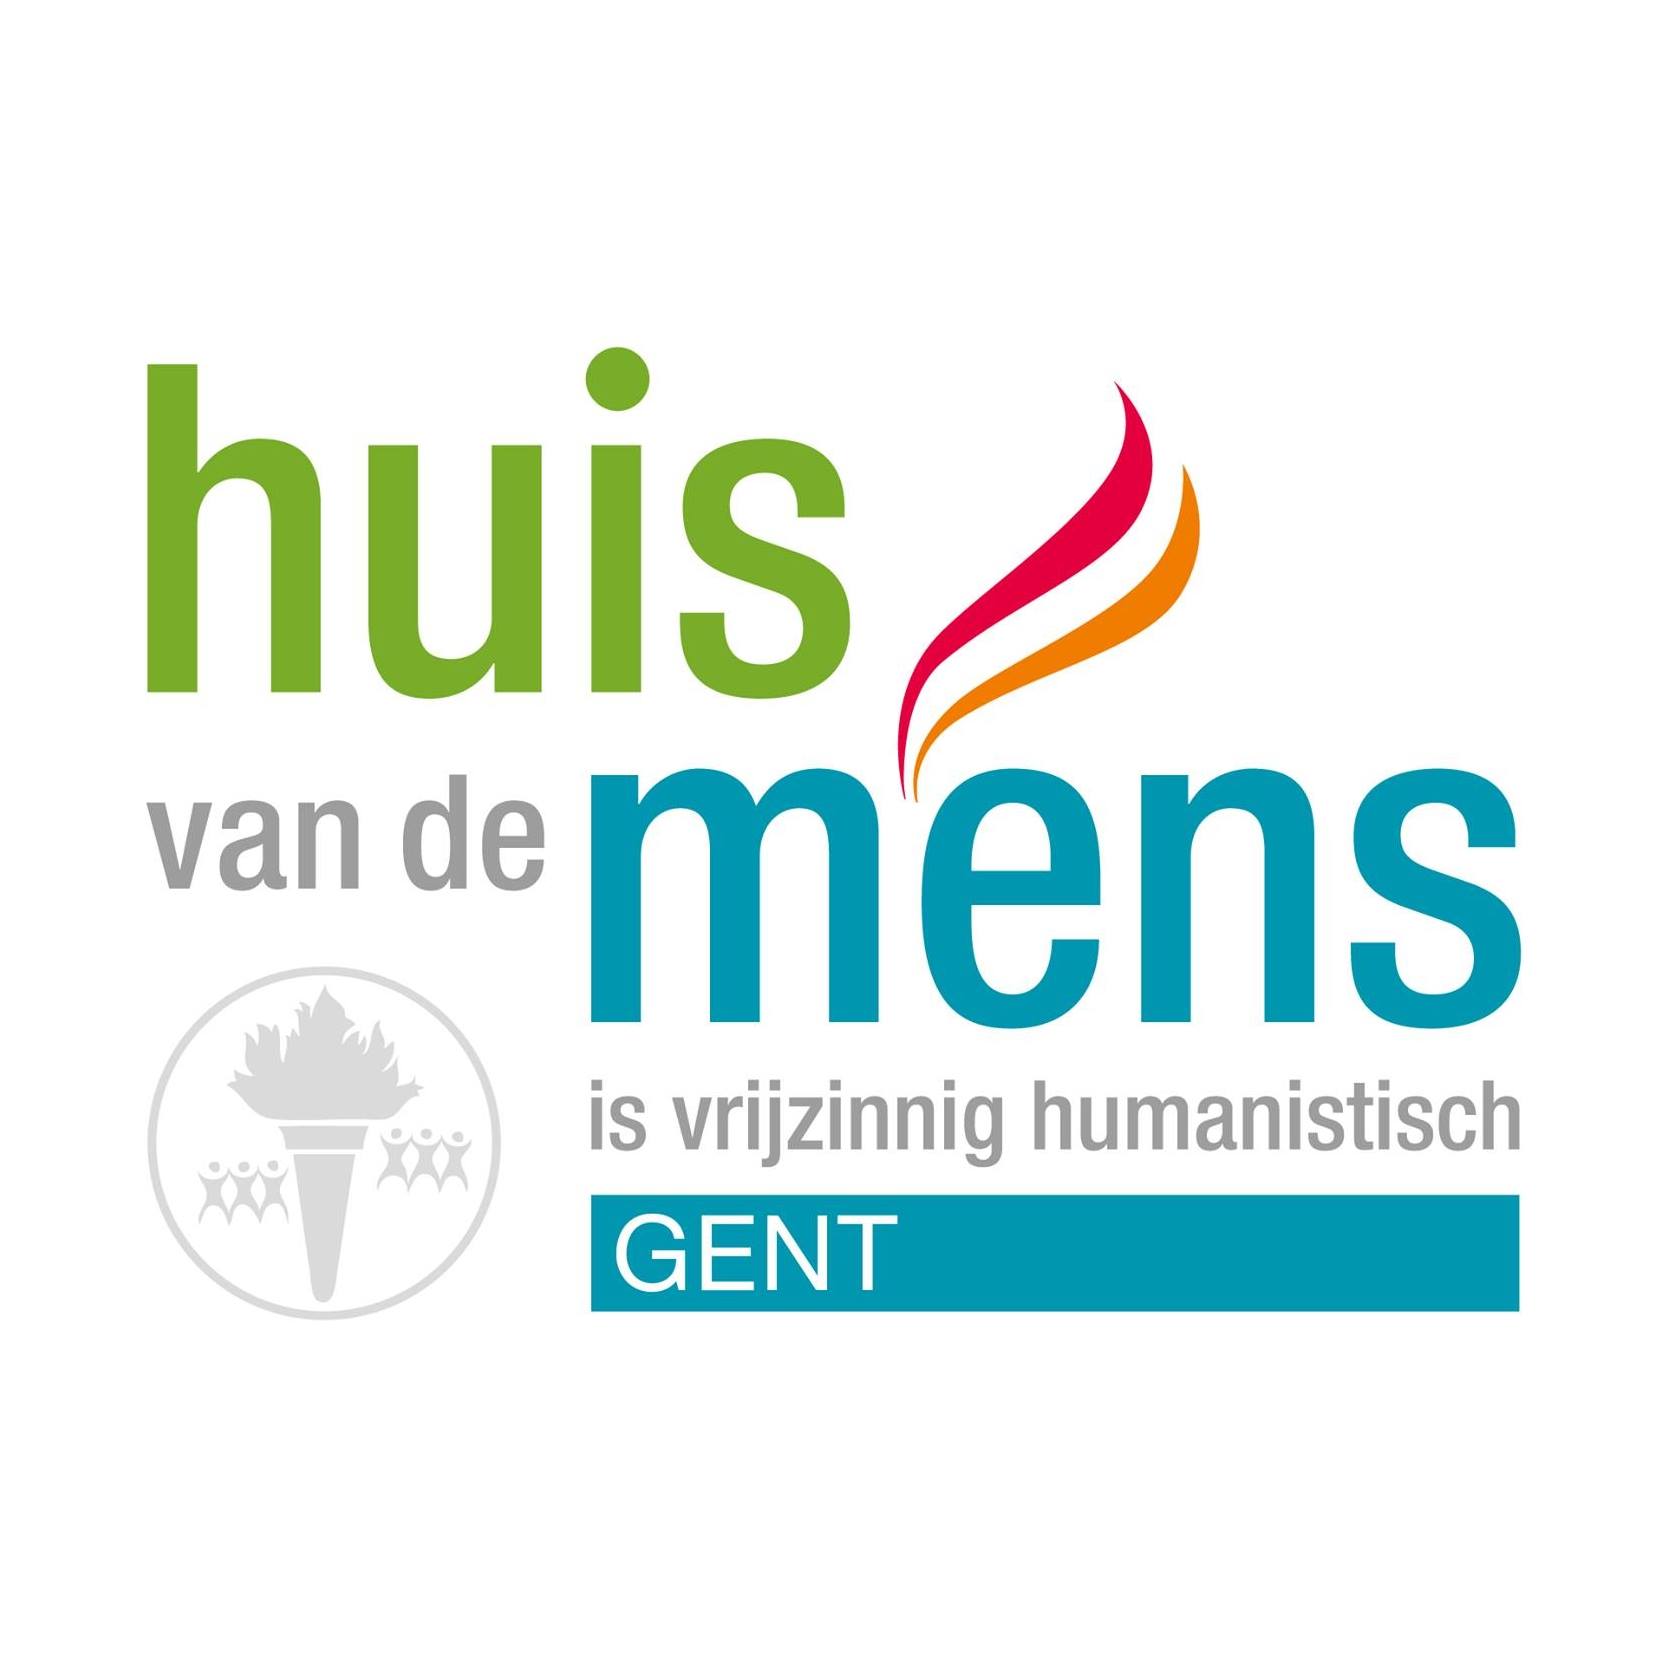 HuisvandeMens Gent